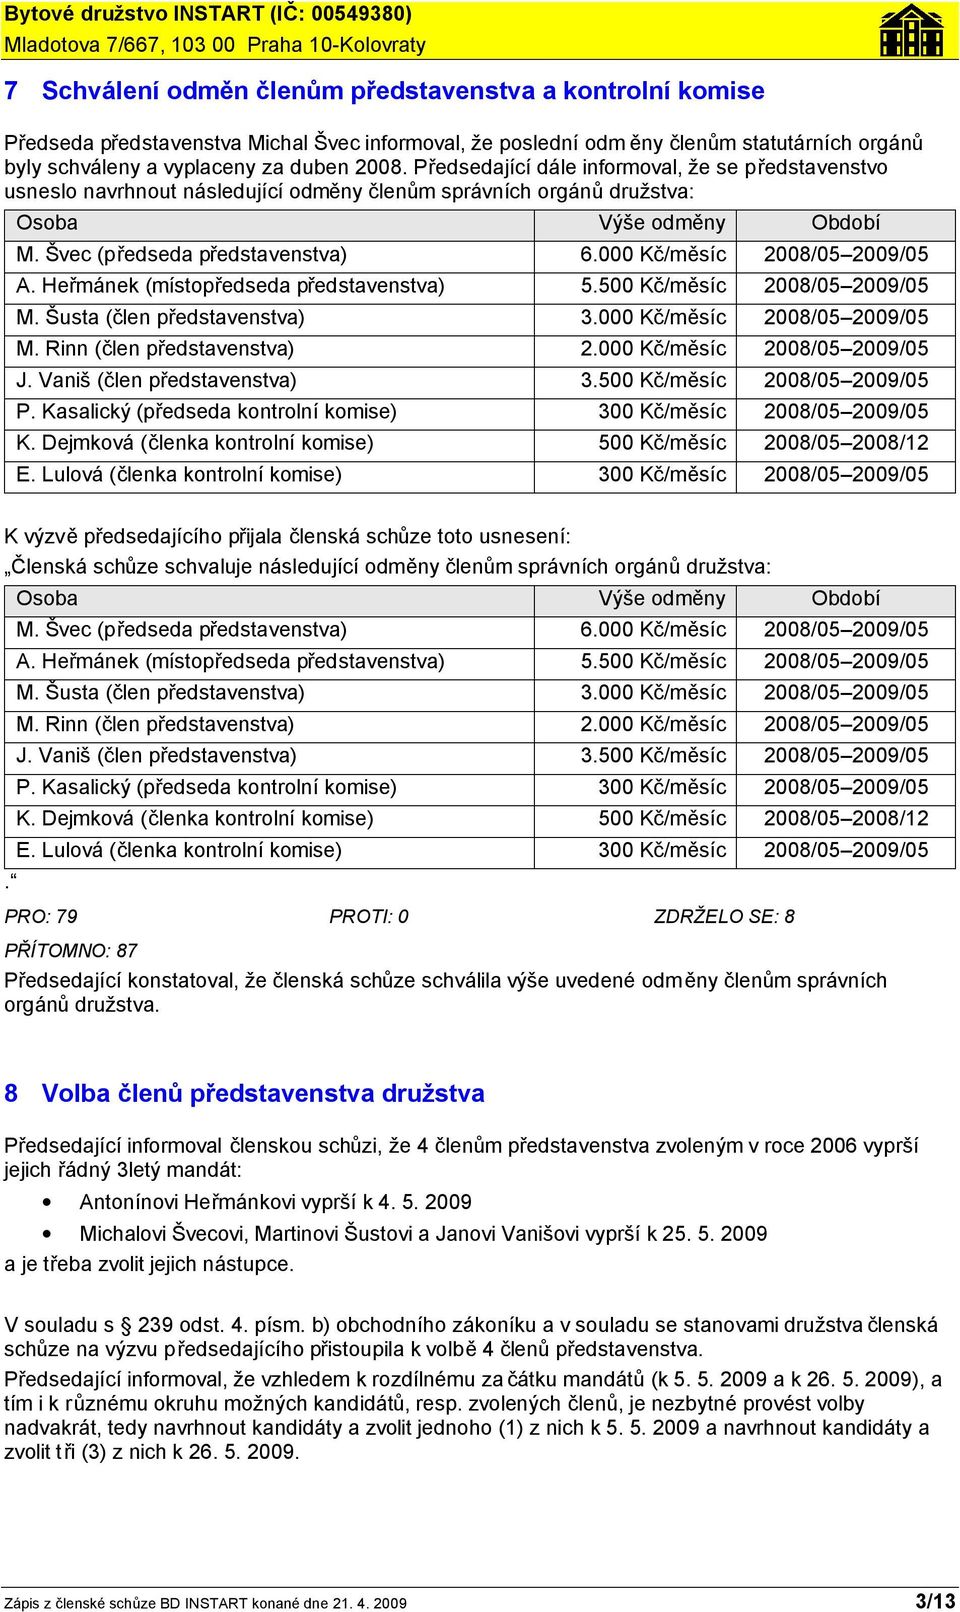 000 Kč/měsíc 2008/05 2009/05 A. Heřmánek (místopředseda představenstva) 5.500 Kč/měsíc 2008/05 2009/05 M. Šusta (člen představenstva) 3.000 Kč/měsíc 2008/05 2009/05 M. Rinn (člen představenstva) 2.